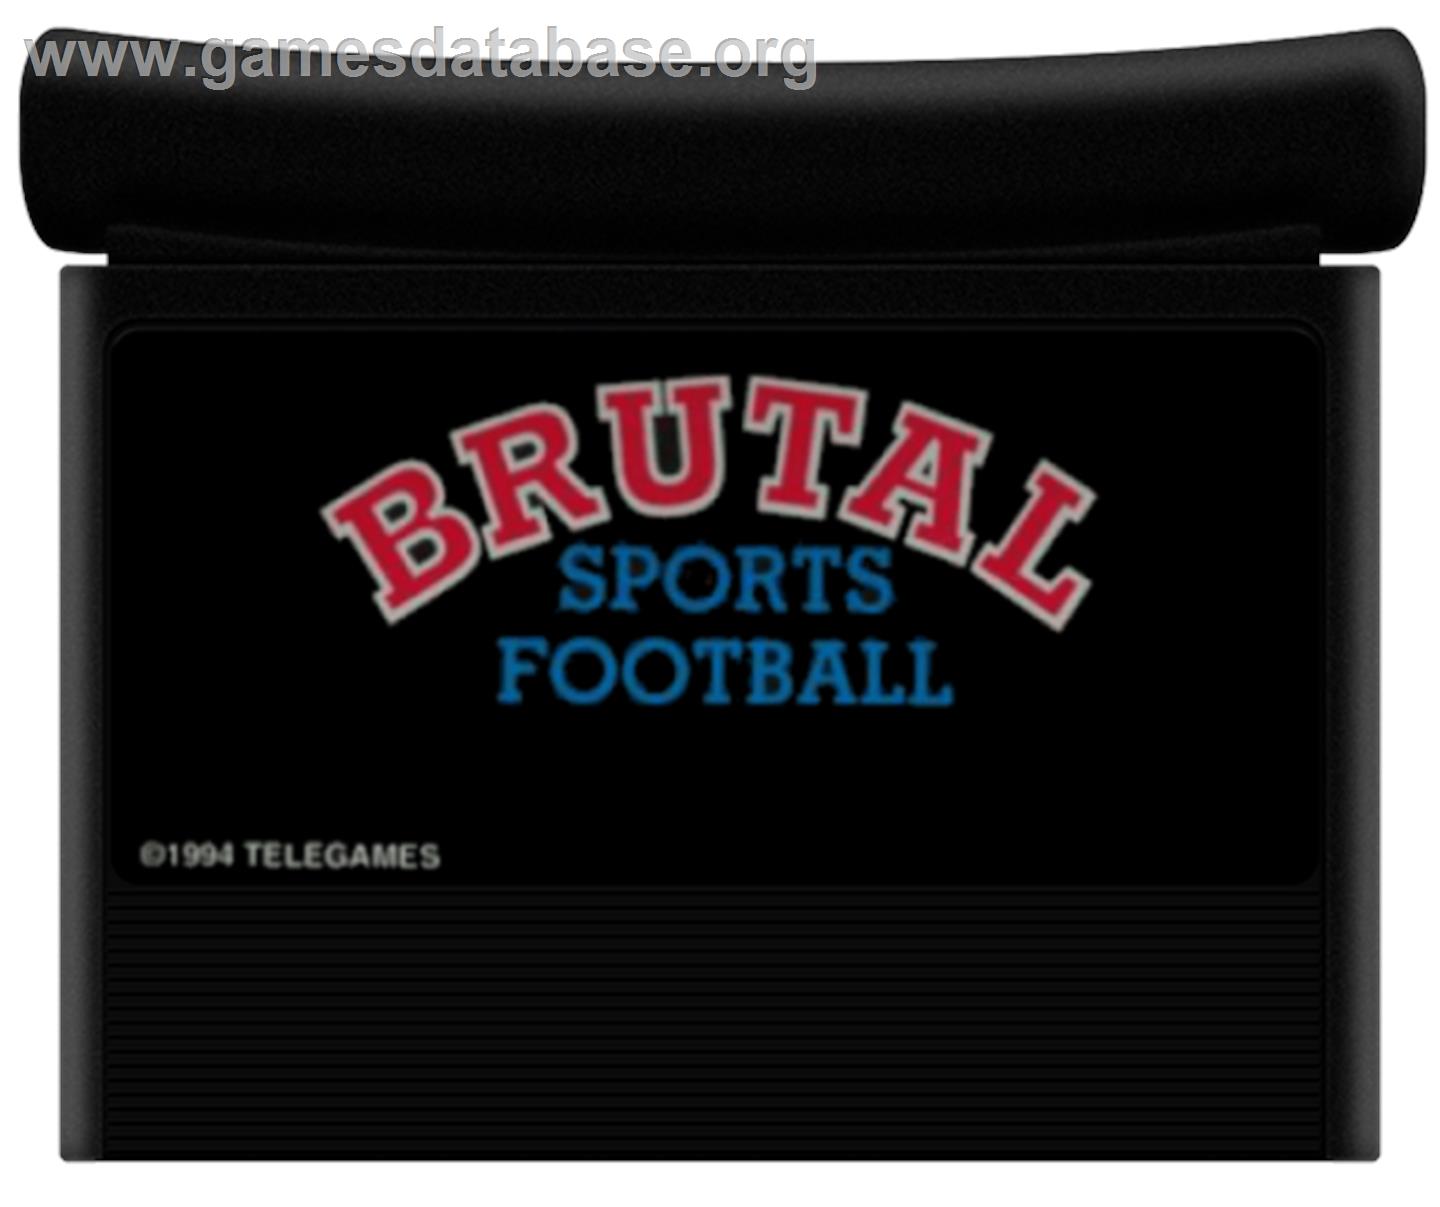 Brutal Sports Football - Atari Jaguar - Artwork - Cartridge